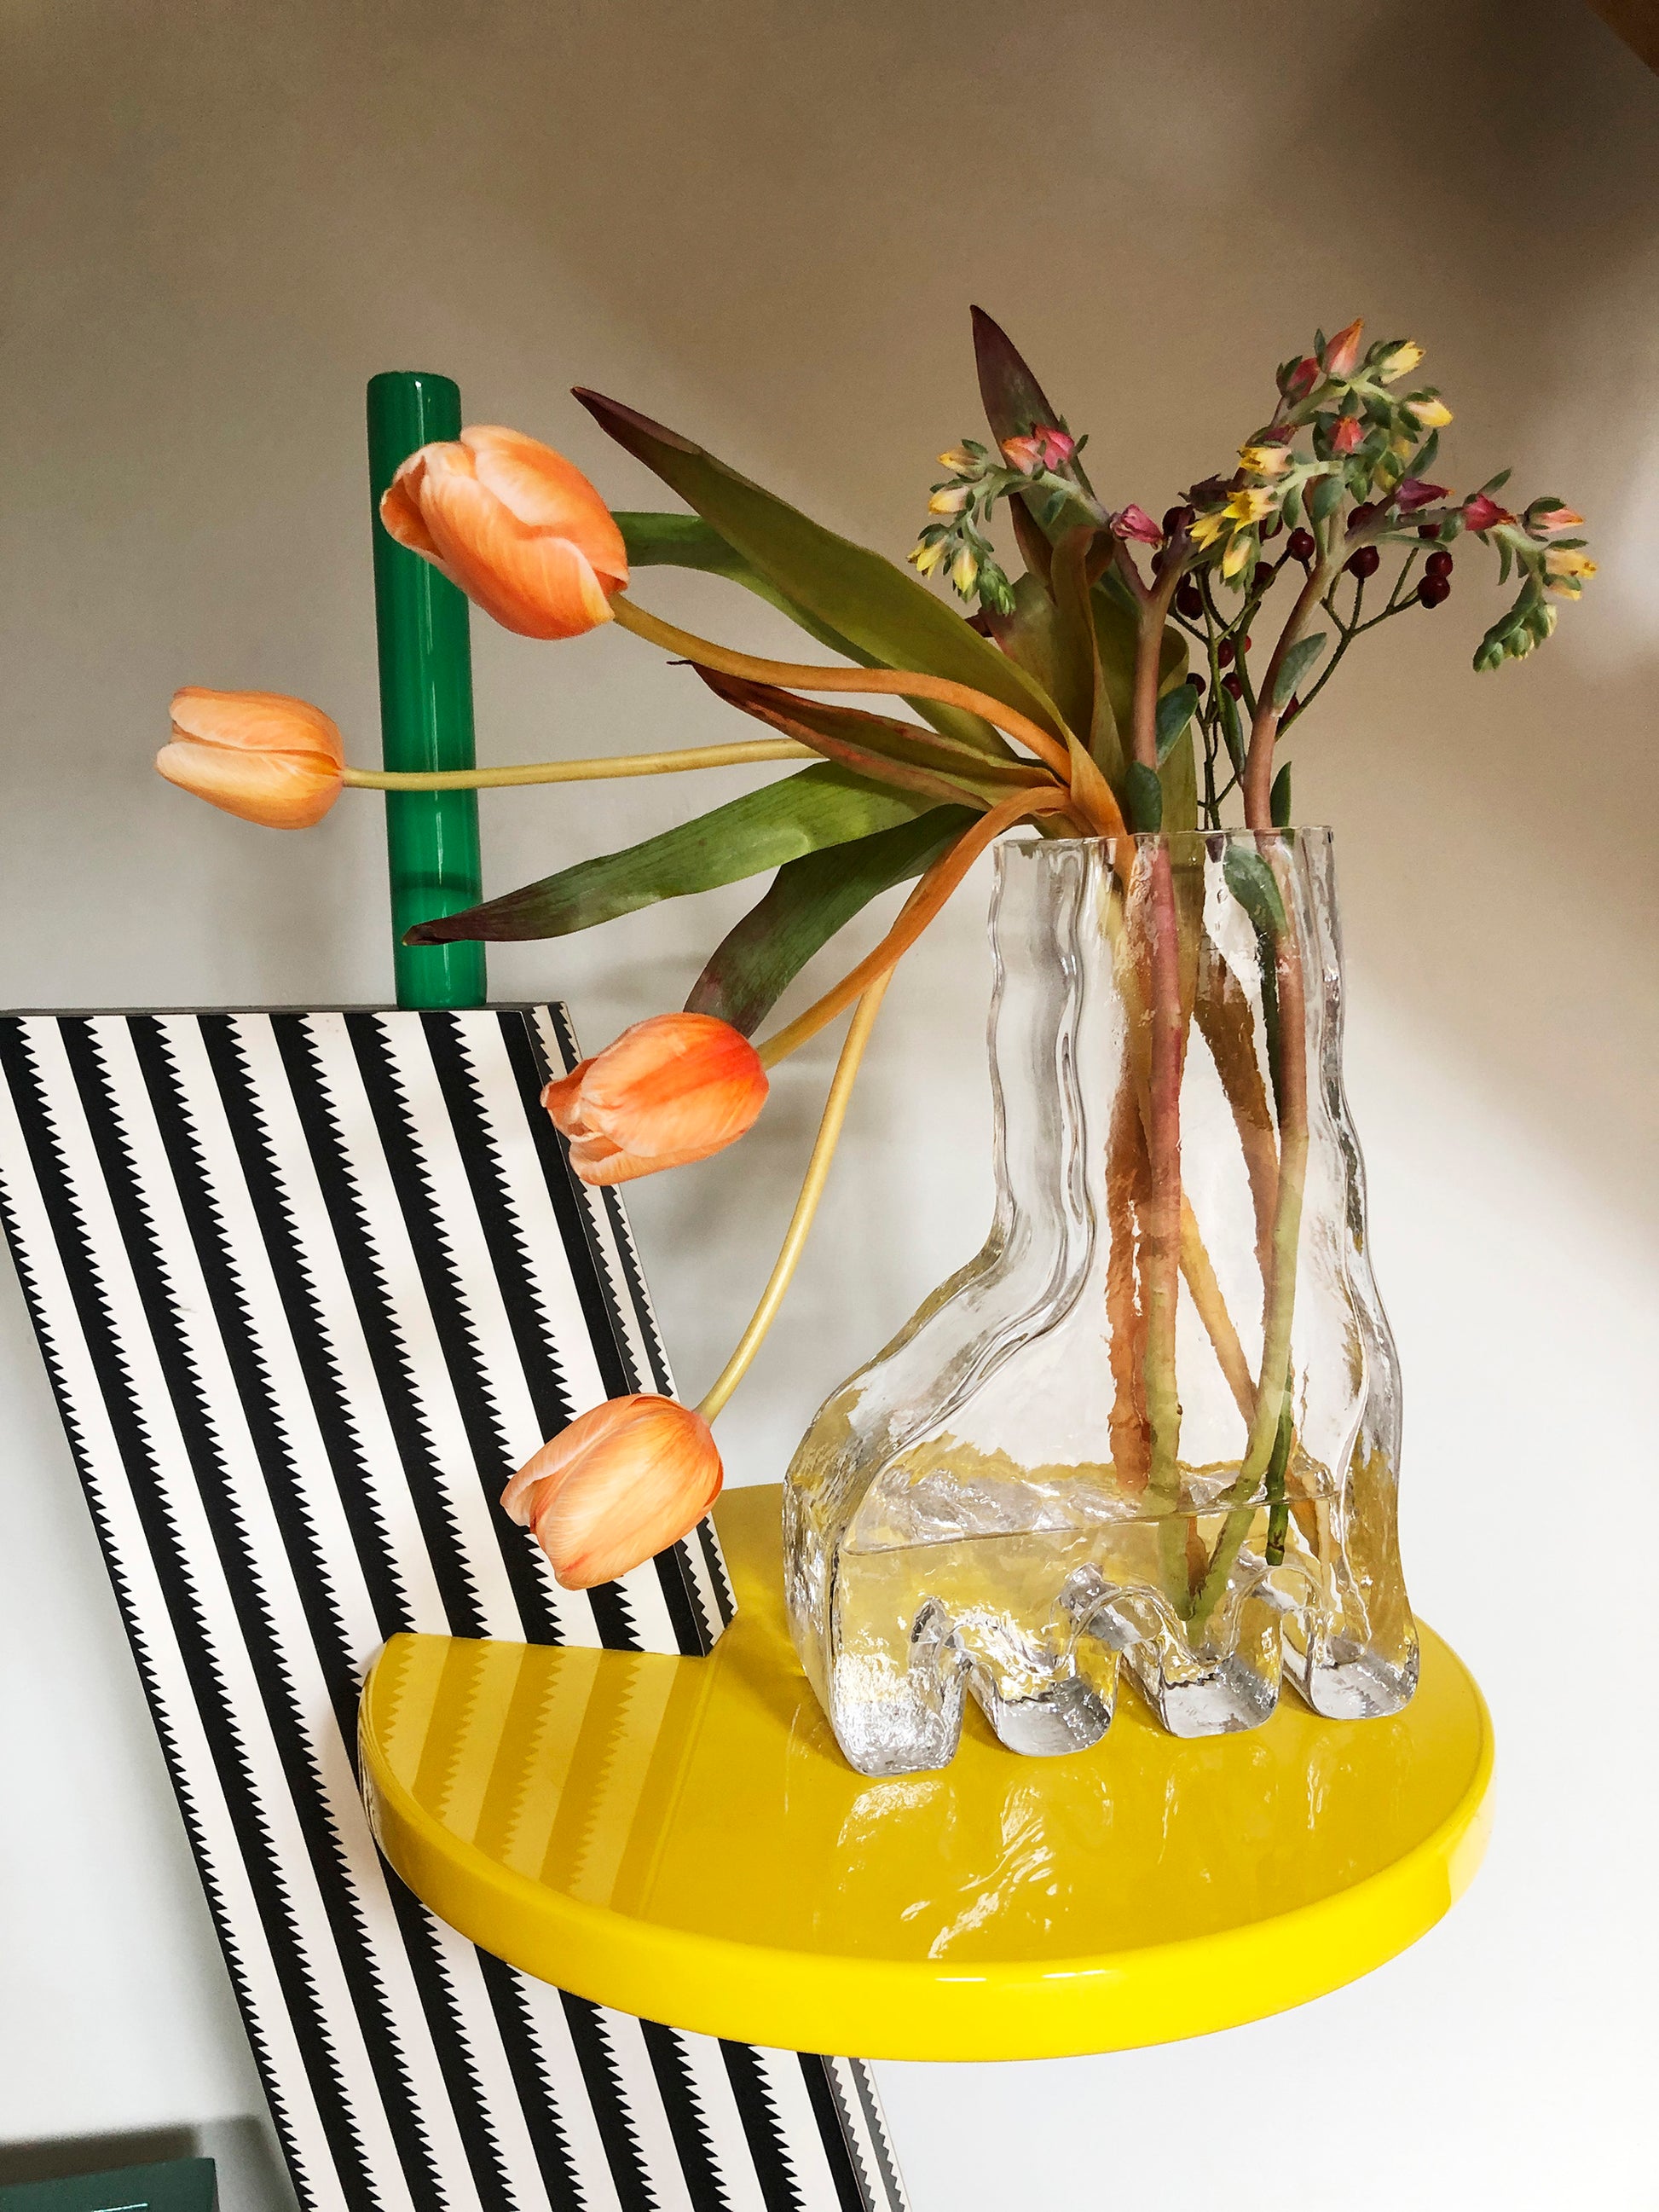 Vase en verre transparent en forme de patte, de main ou de pied, design original par Studio Reiser.